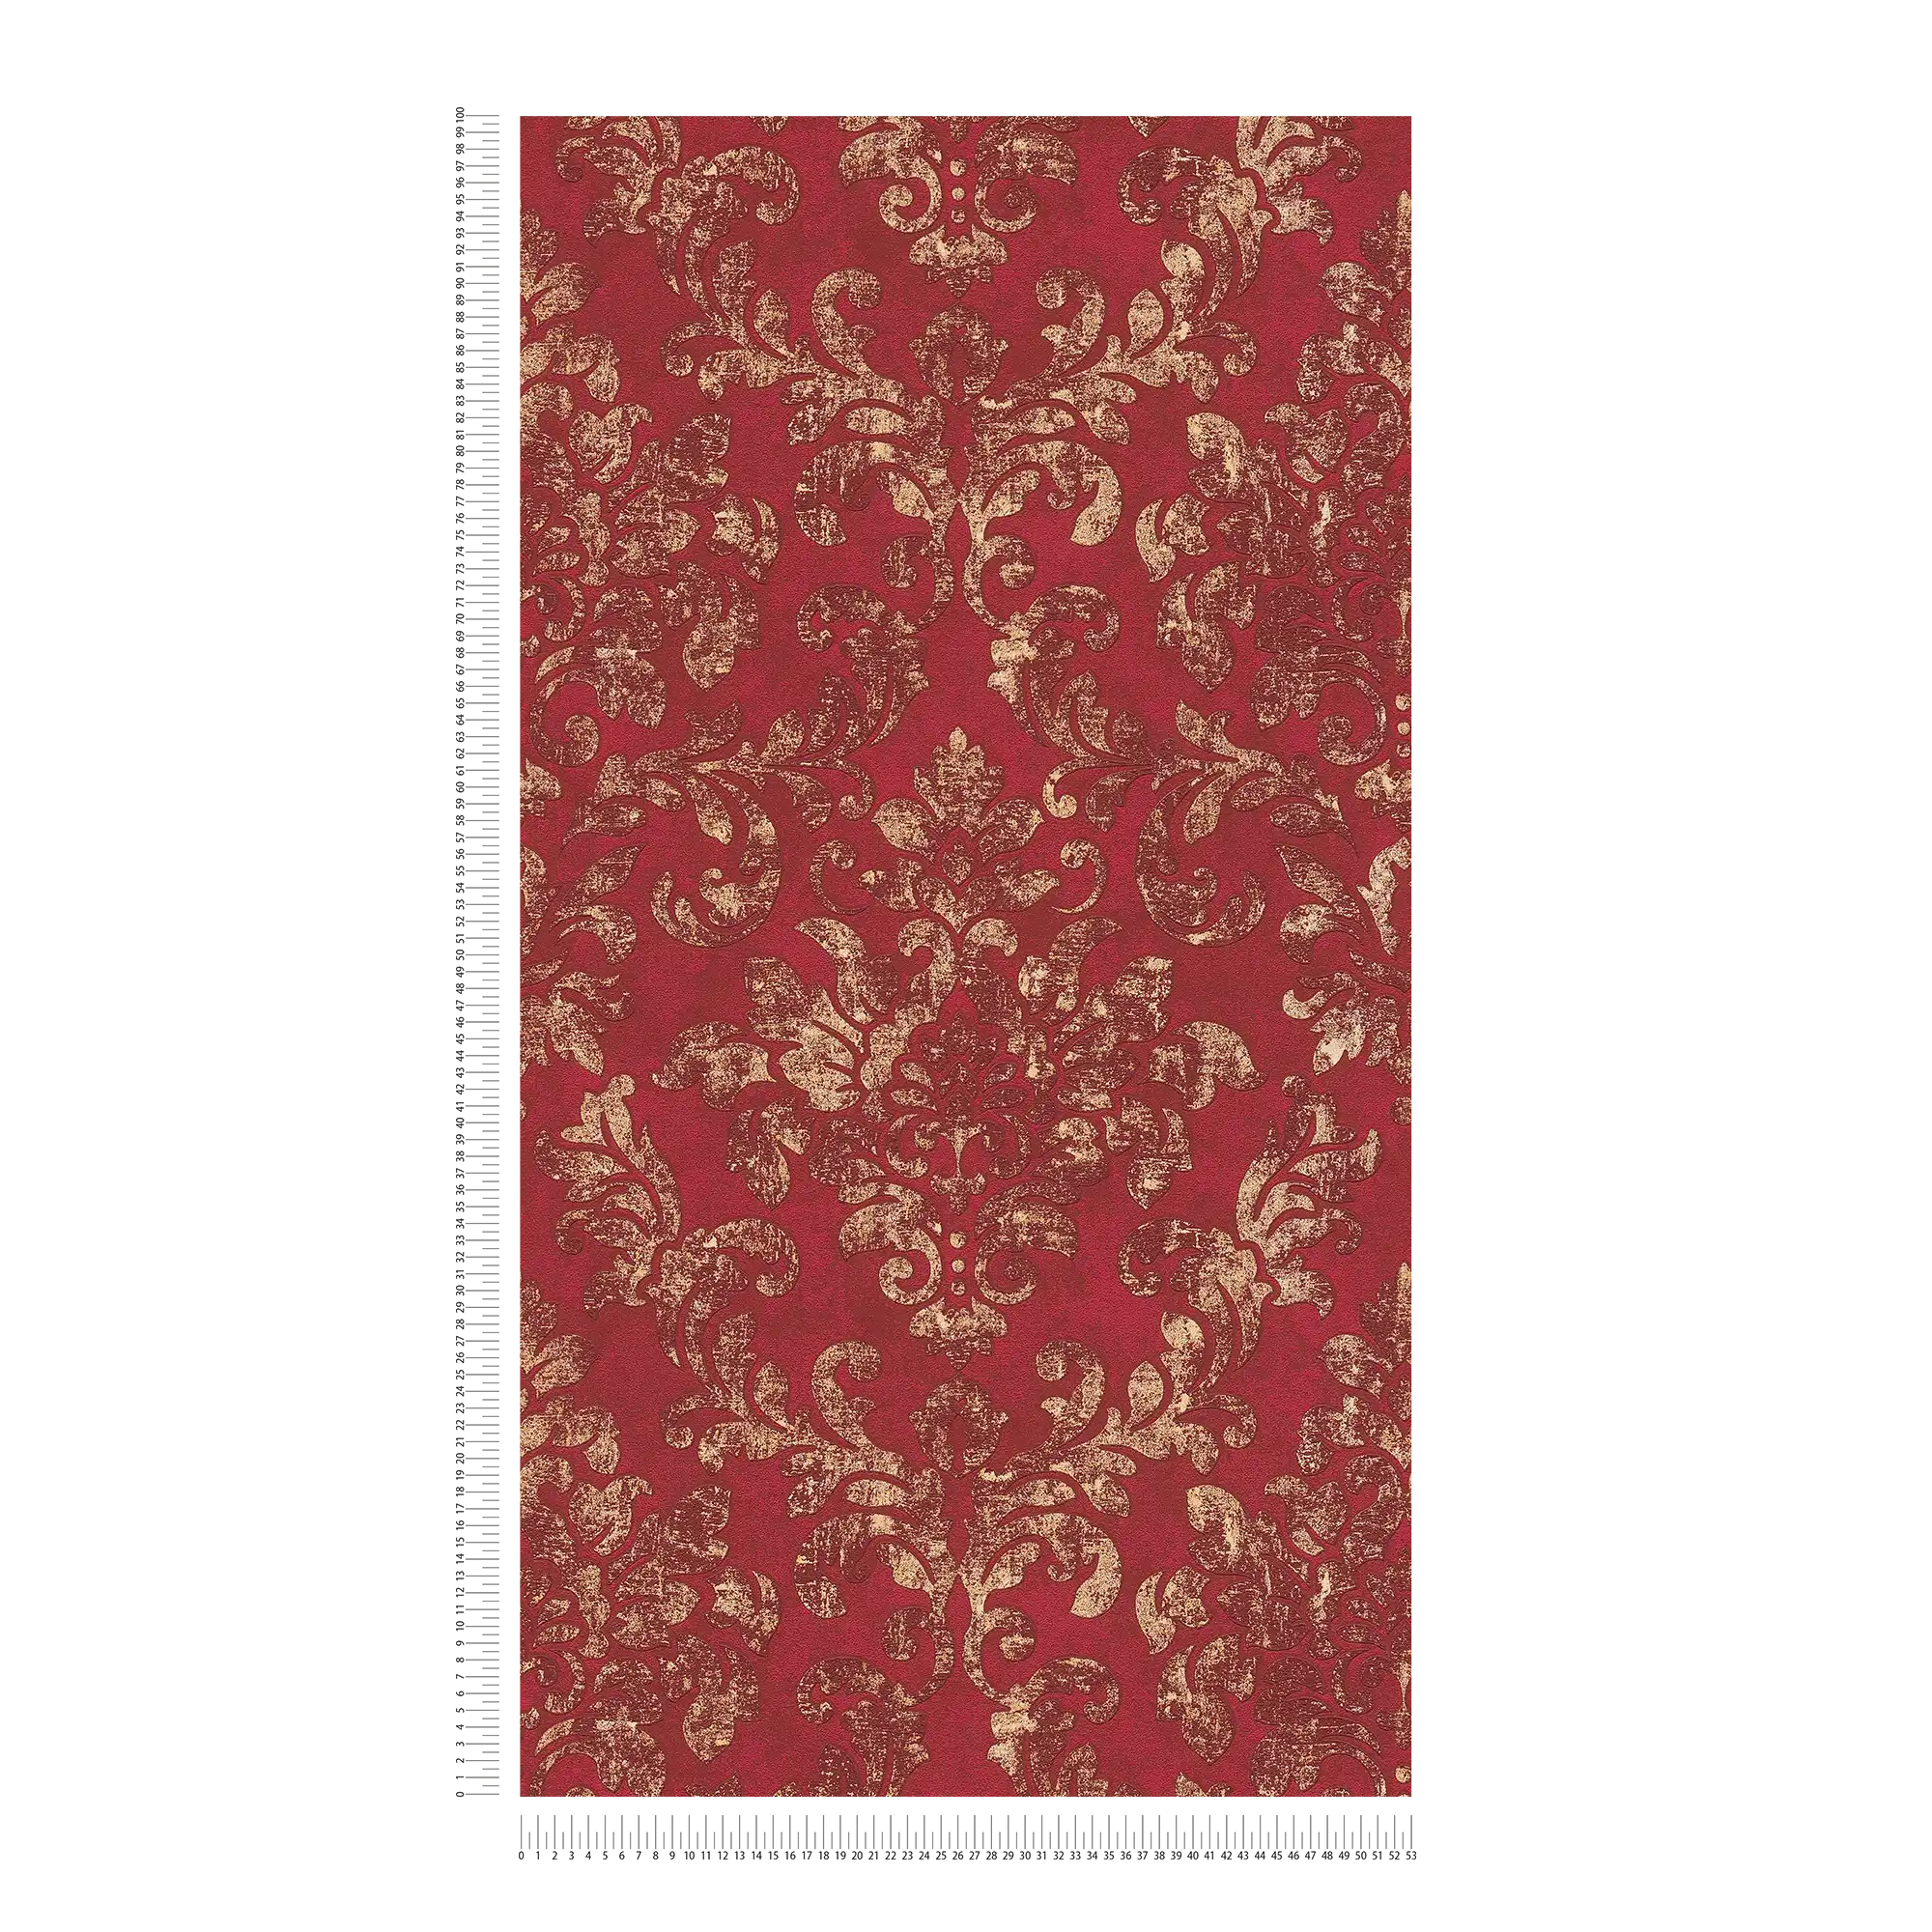             Papier peint baroque avec ornements en look usé - rouge, or
        